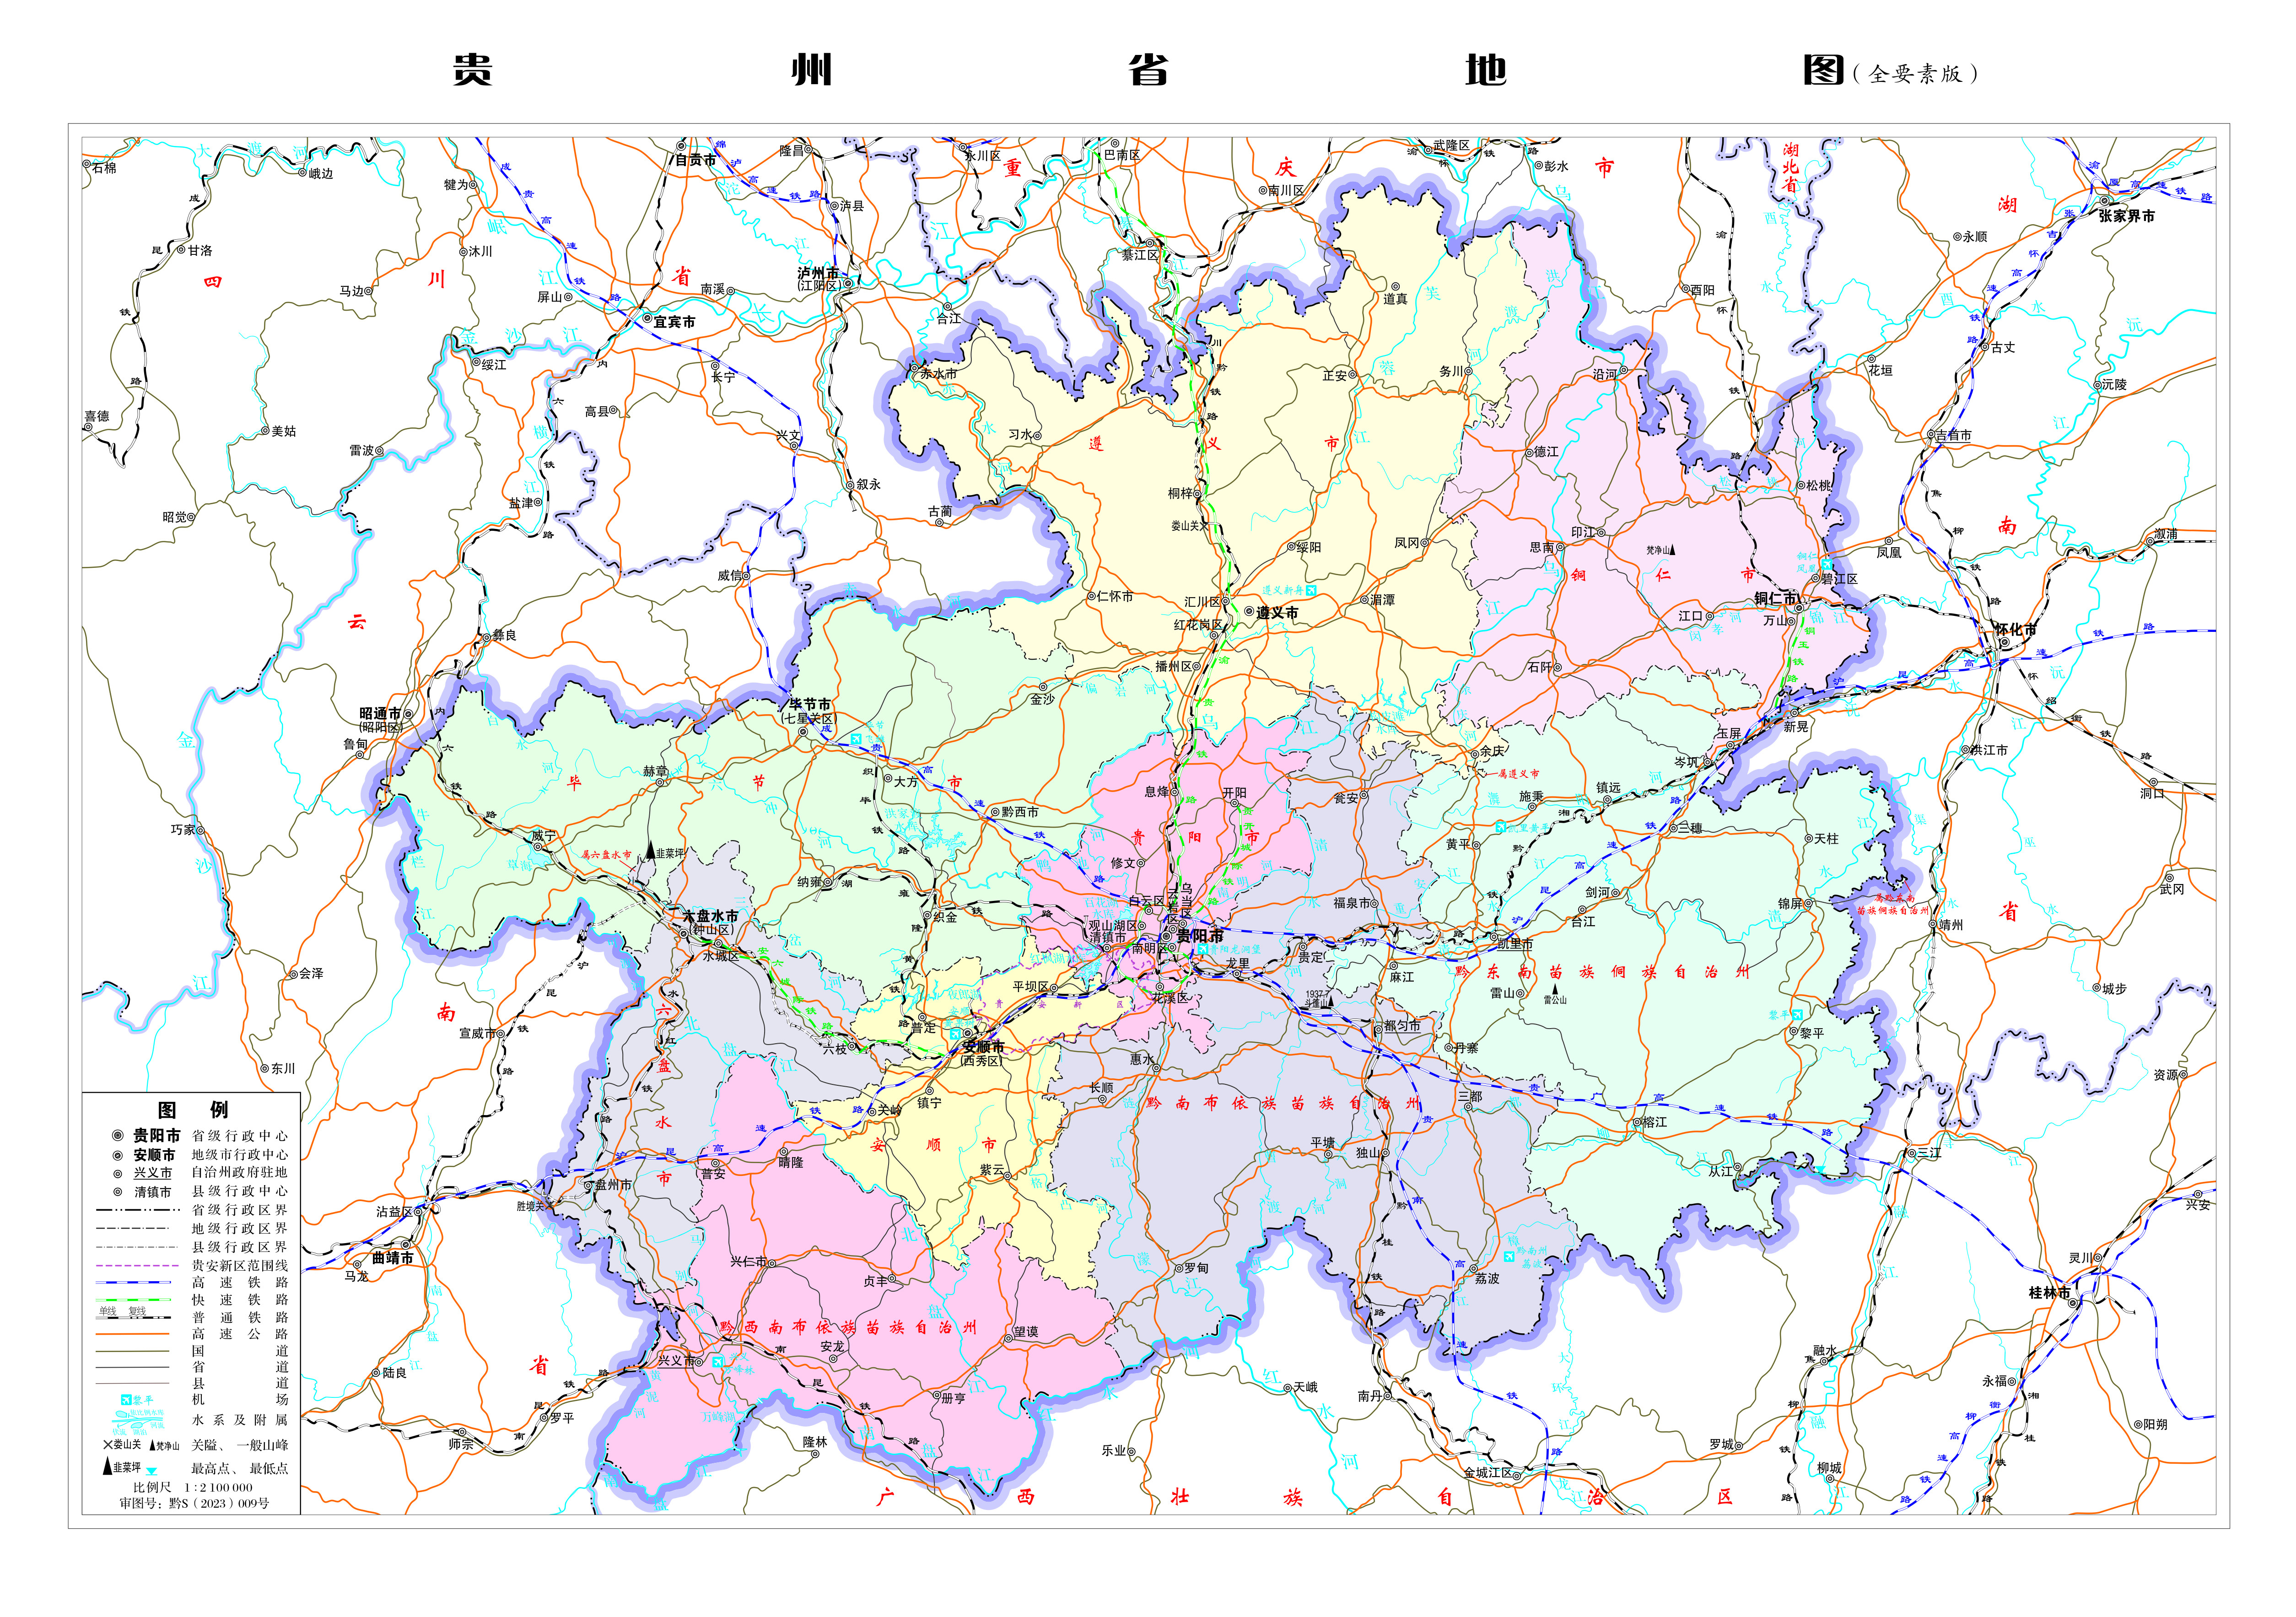 贵州省地图 放大图片